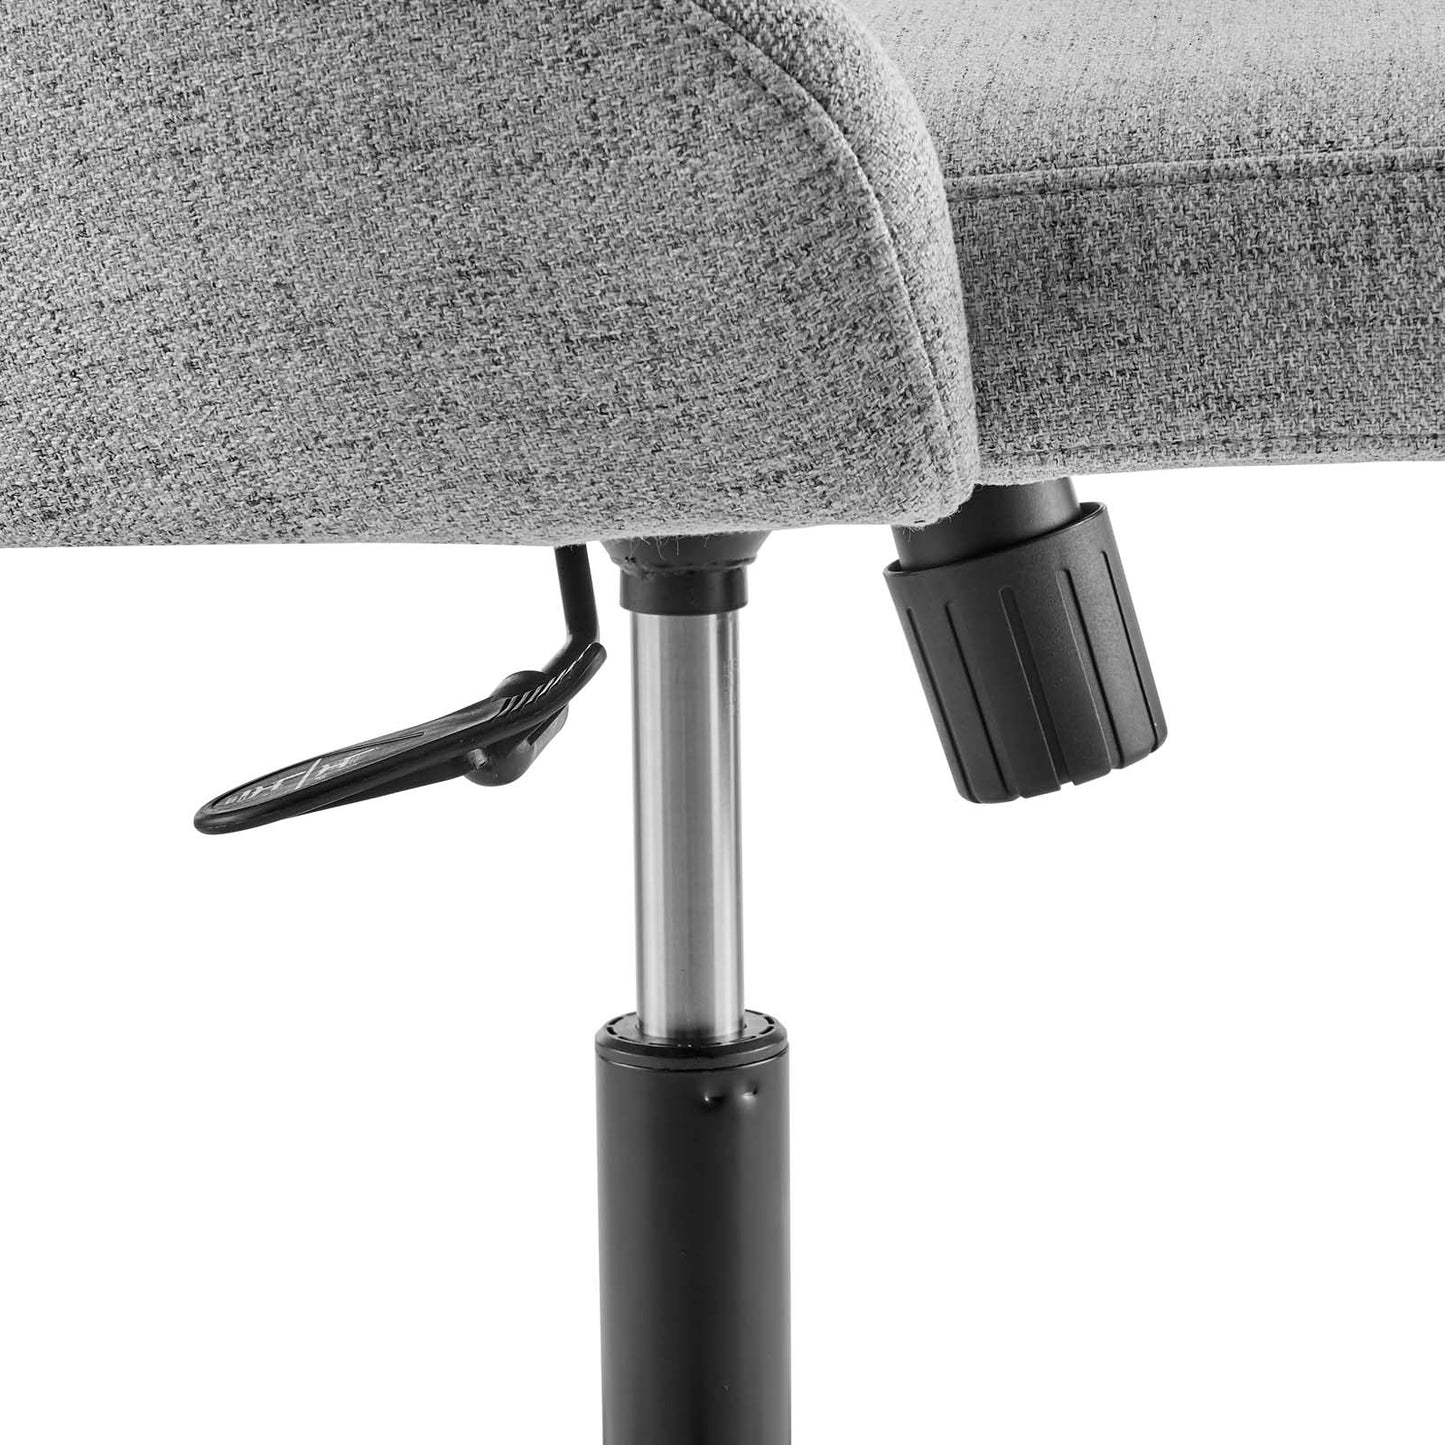 Distinct Tufted Swivel Upholstered Office Chair Black Light Gray EEI-4369-BLK-LGR